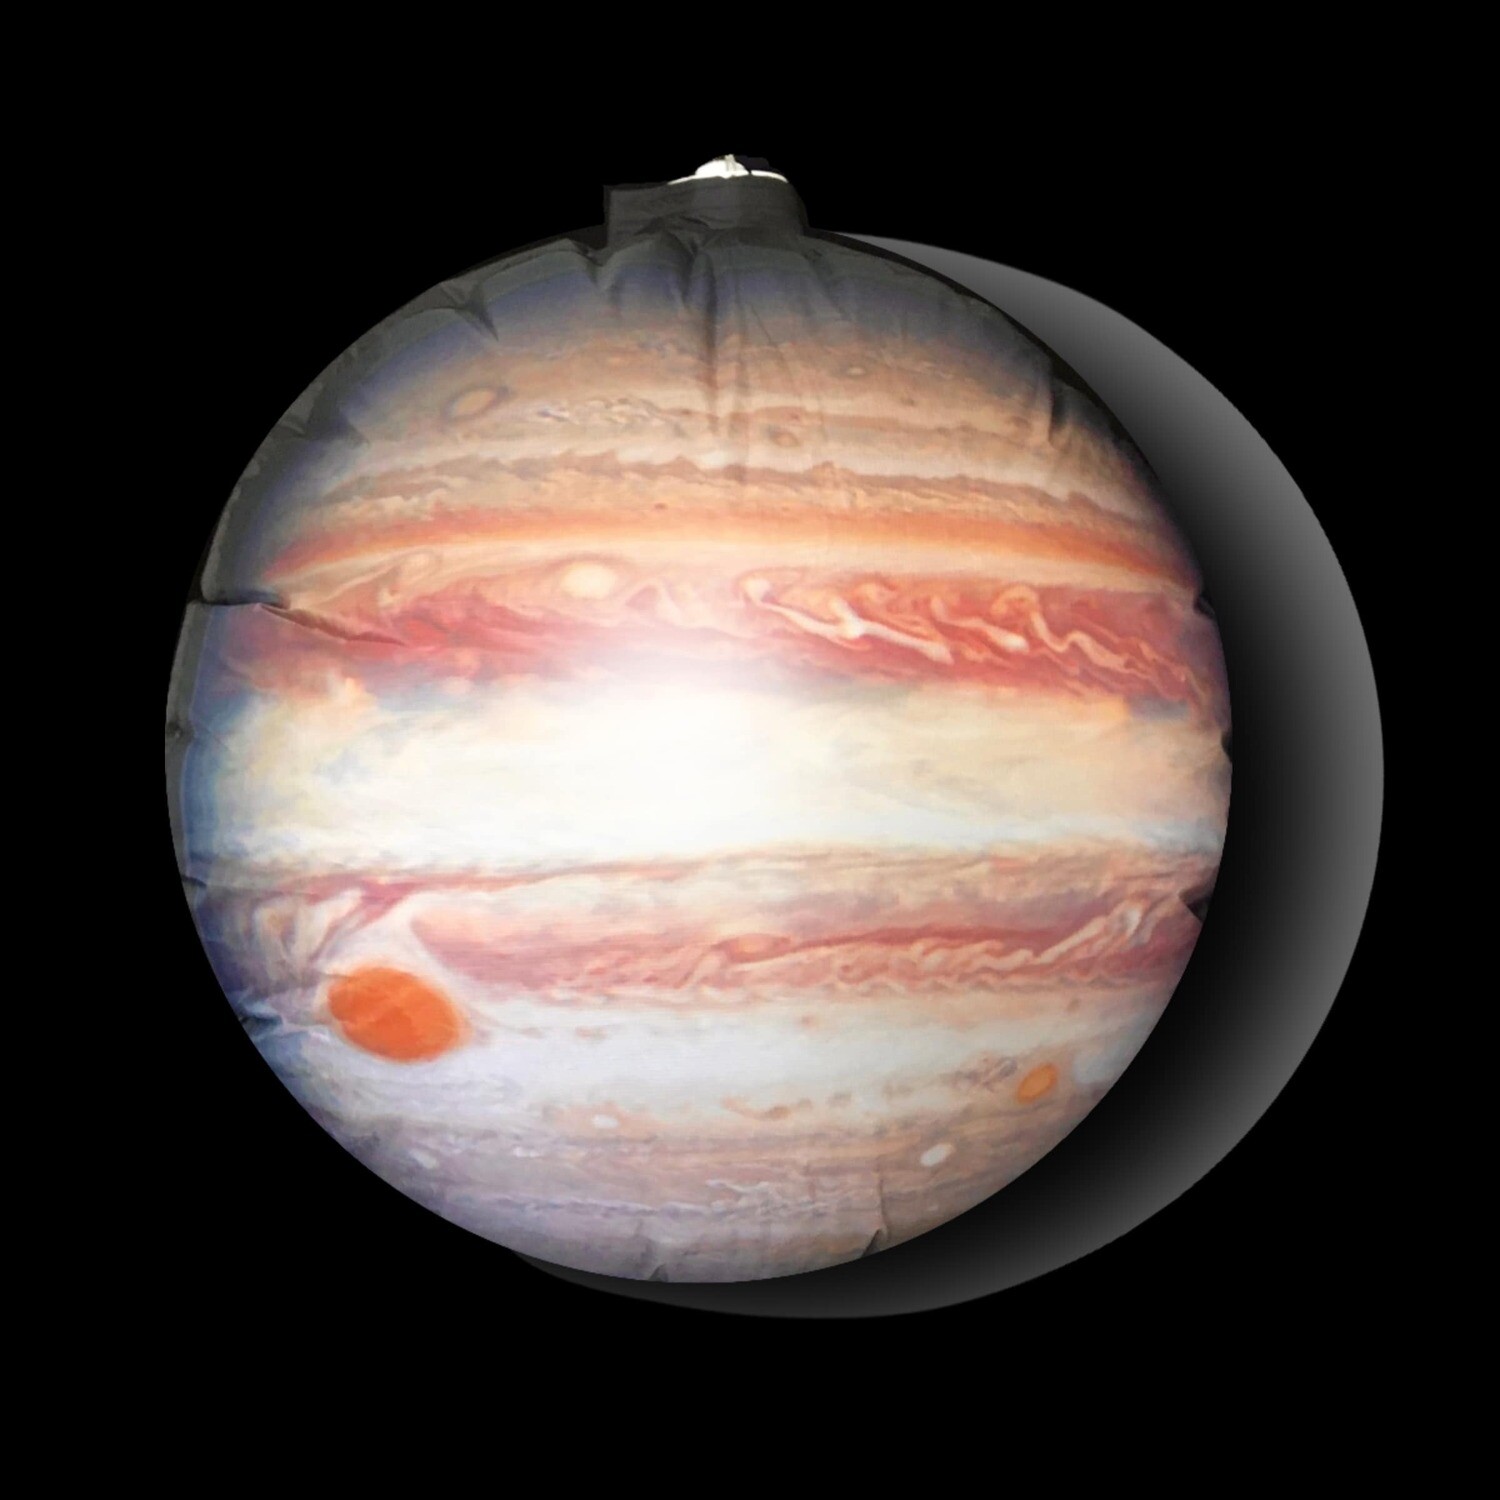 Hanging Inflatable Planet Jupiter 4ft/122cm x 4ft/122cm high